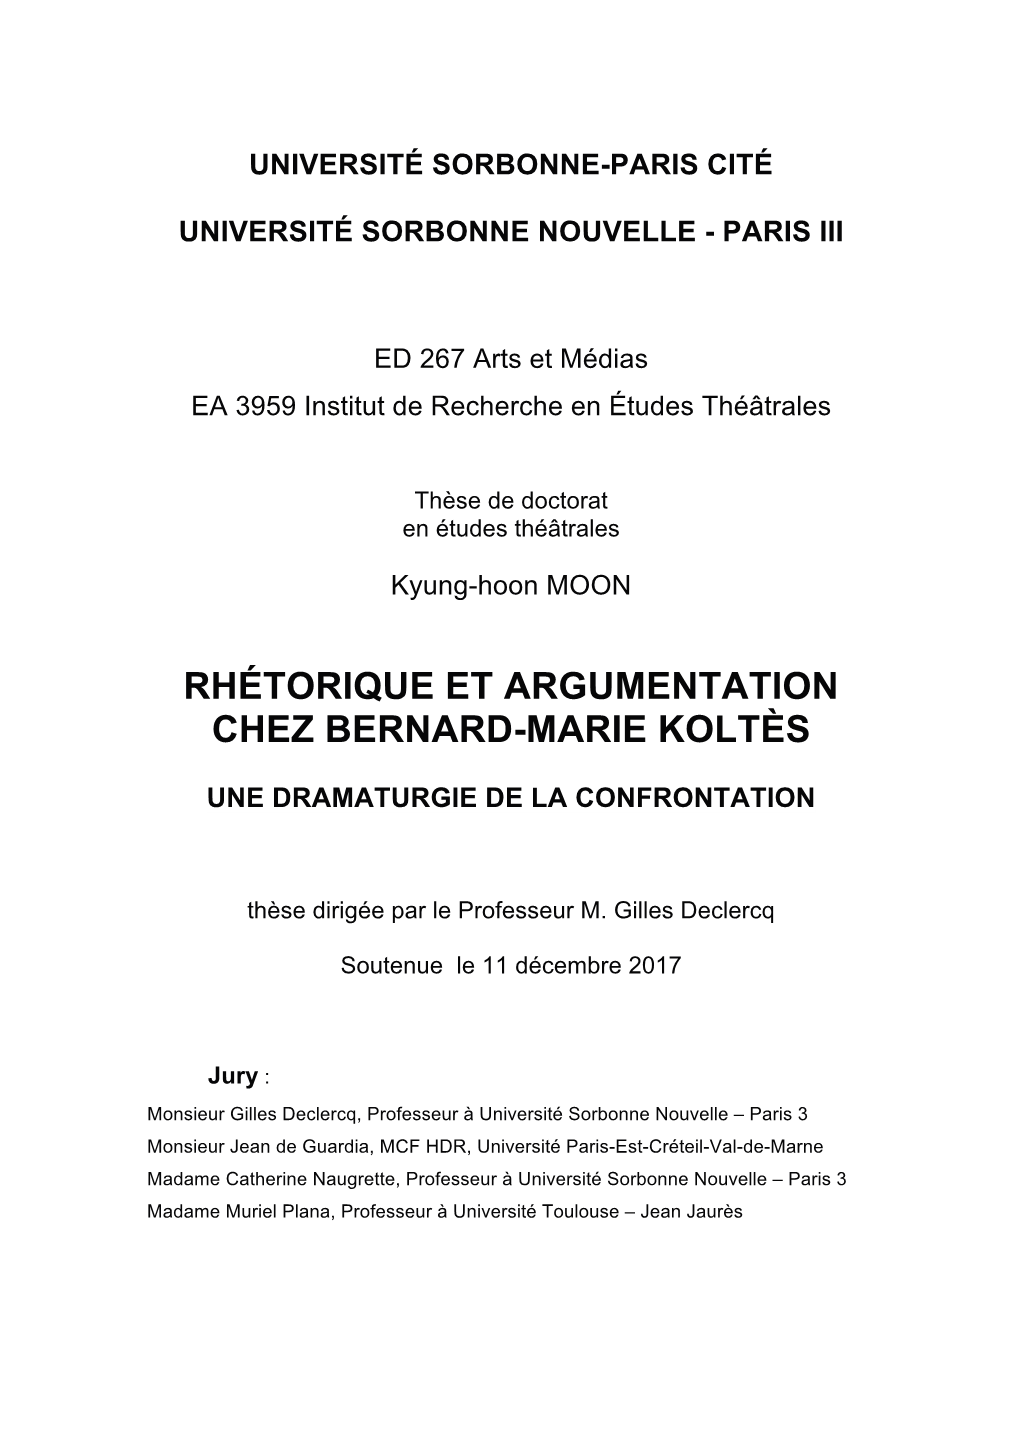 Rhétorique Et Argumentation Chez Bernard-Marie Koltès